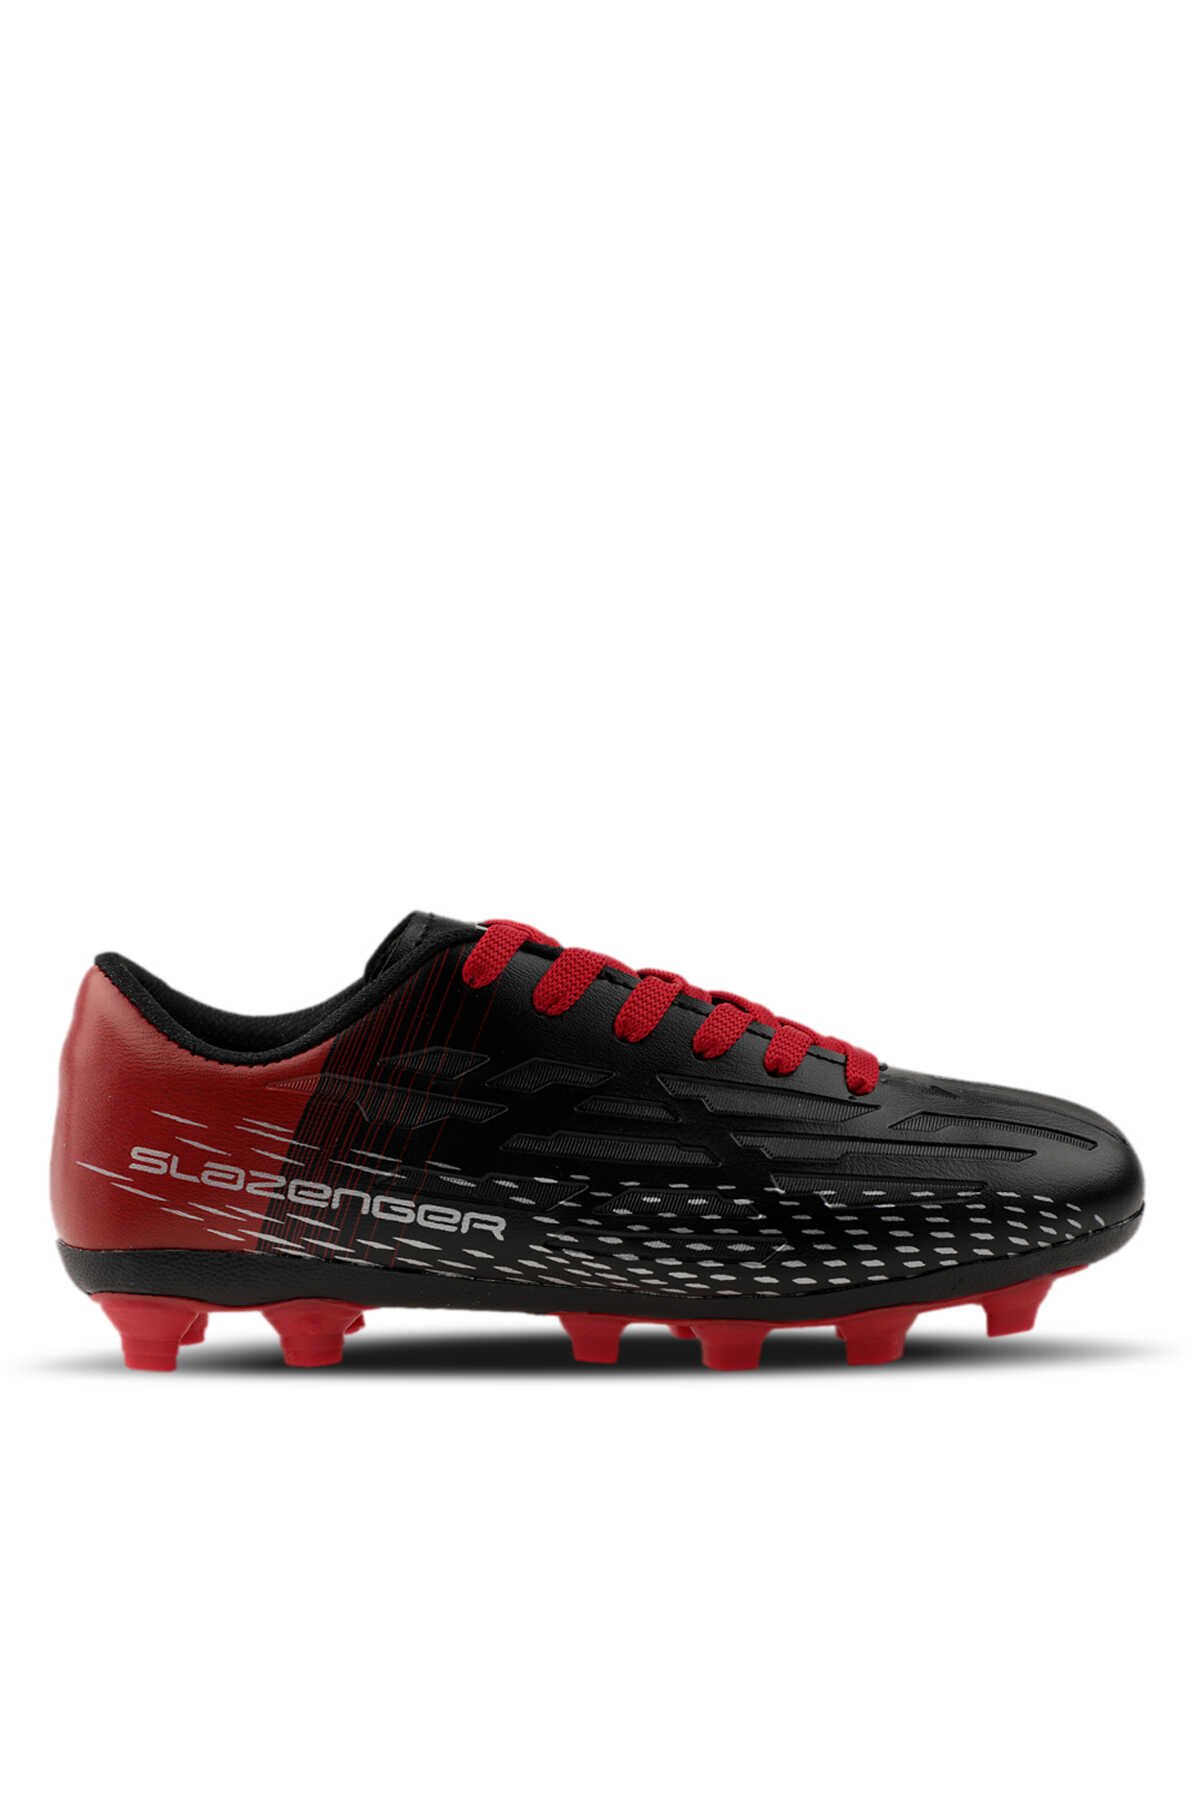 Slazenger - Slazenger SCORE I KR Futbol Erkek Krampon Ayakkabı Siyah / Kırmızı